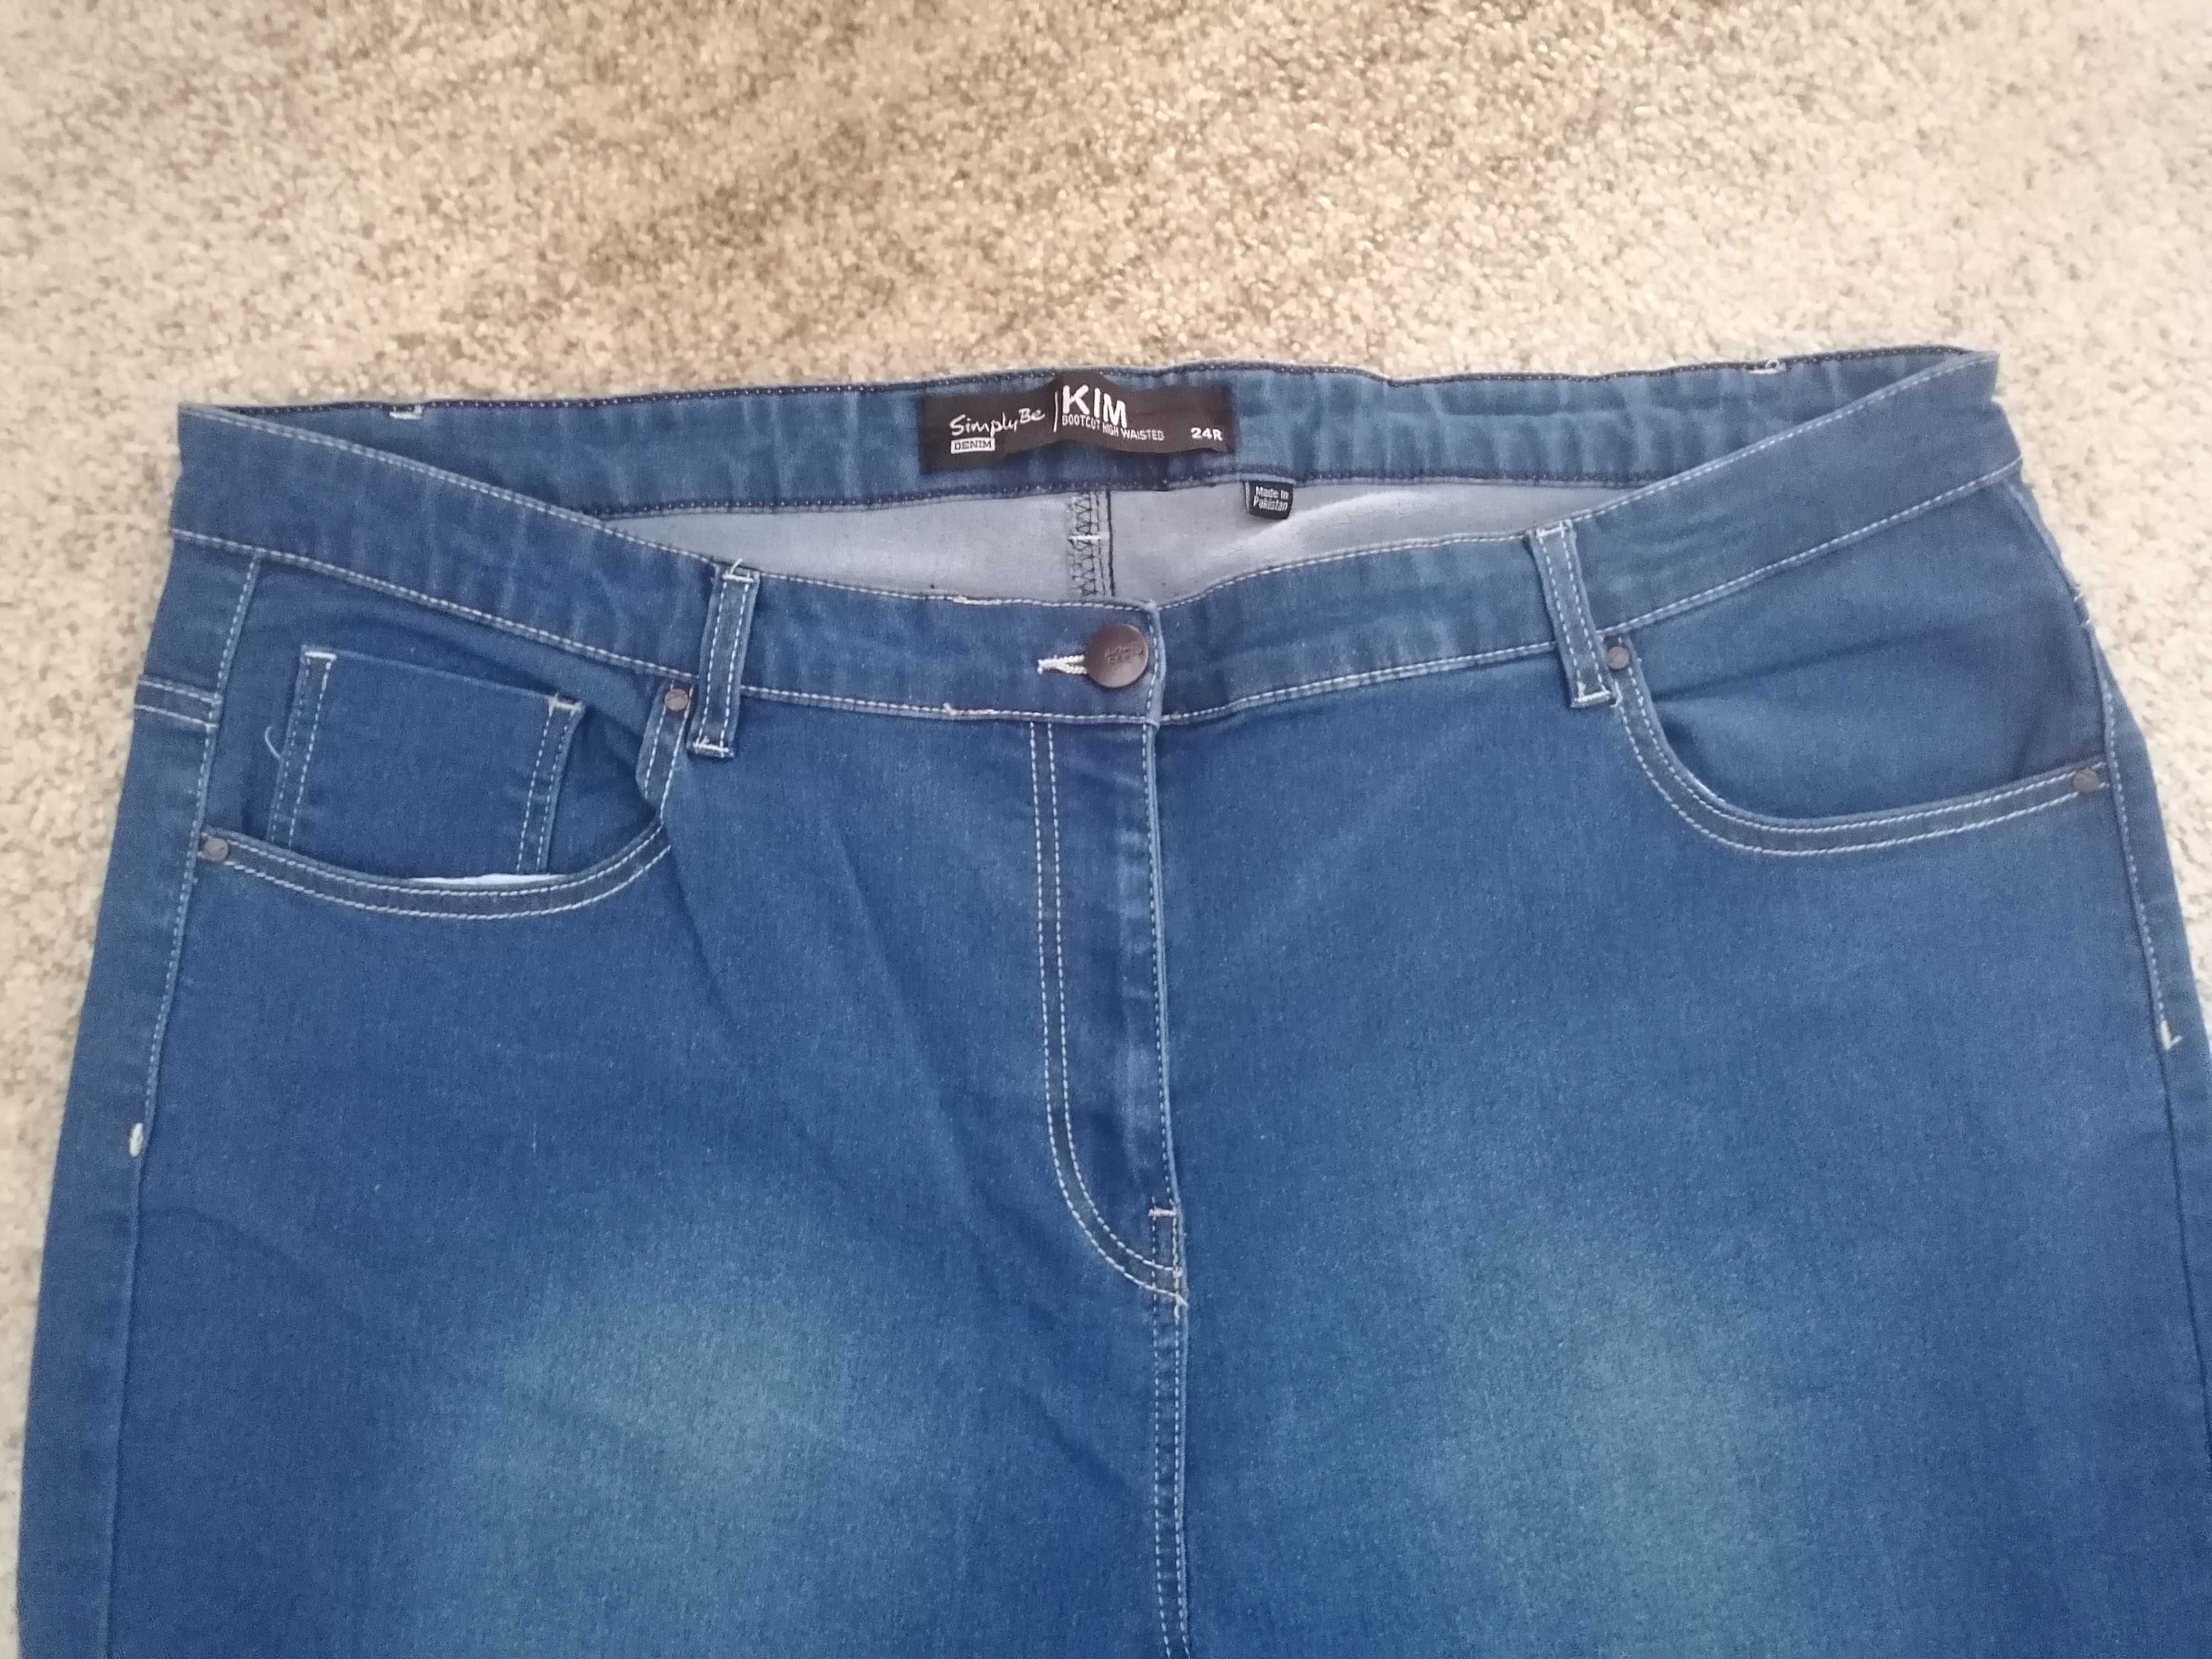 Spodnie damskie - jeans - niebieski kolor rozmiar 52/54